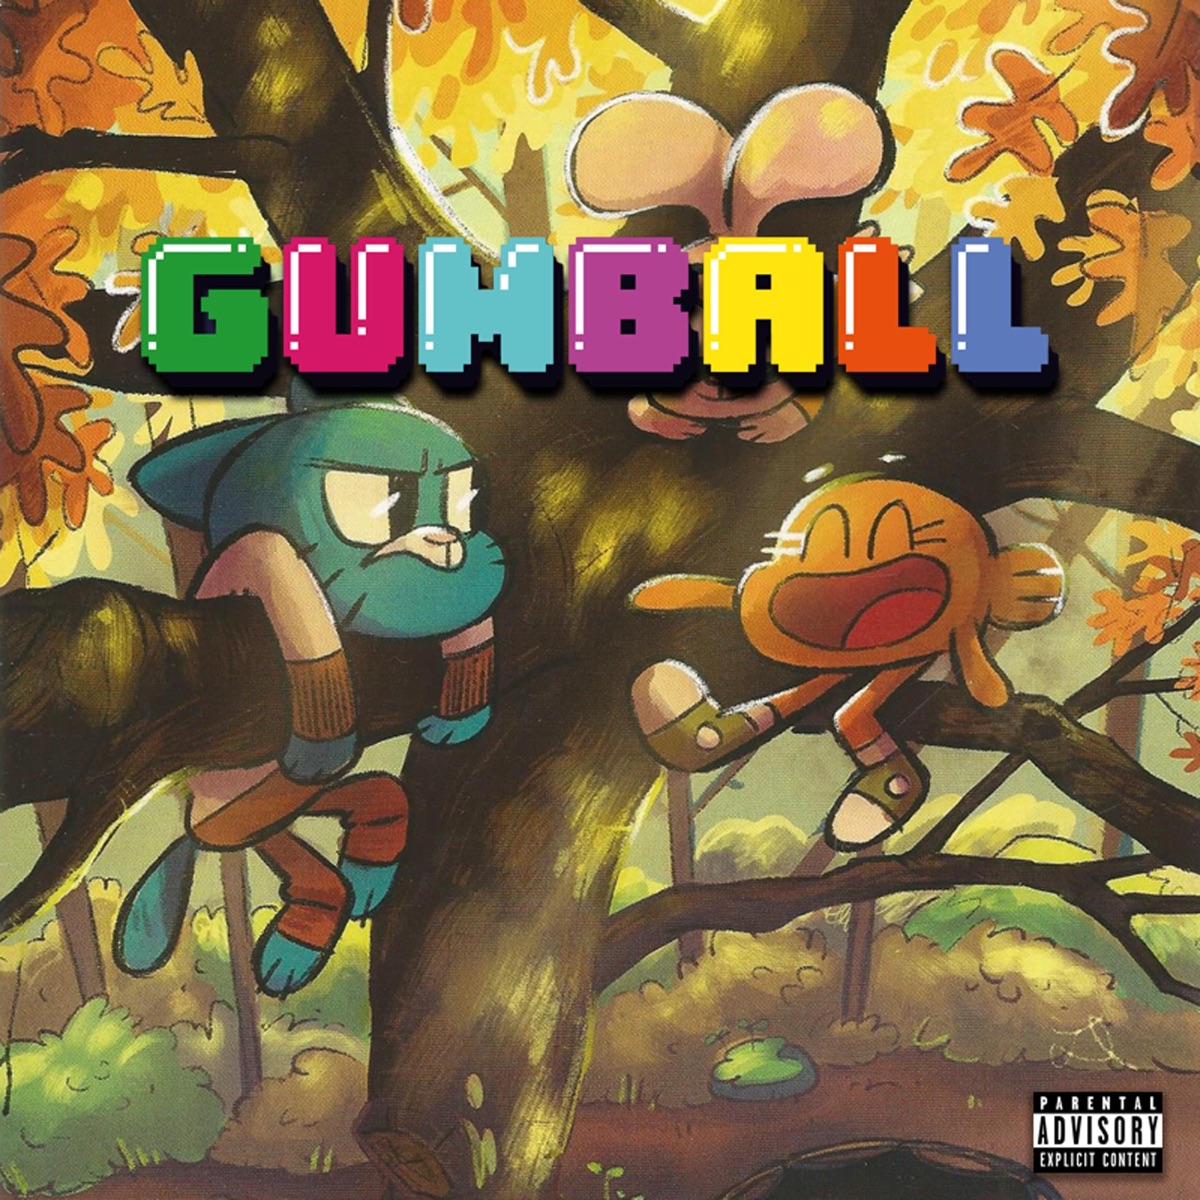 Novo álbum de Gumball já está à venda